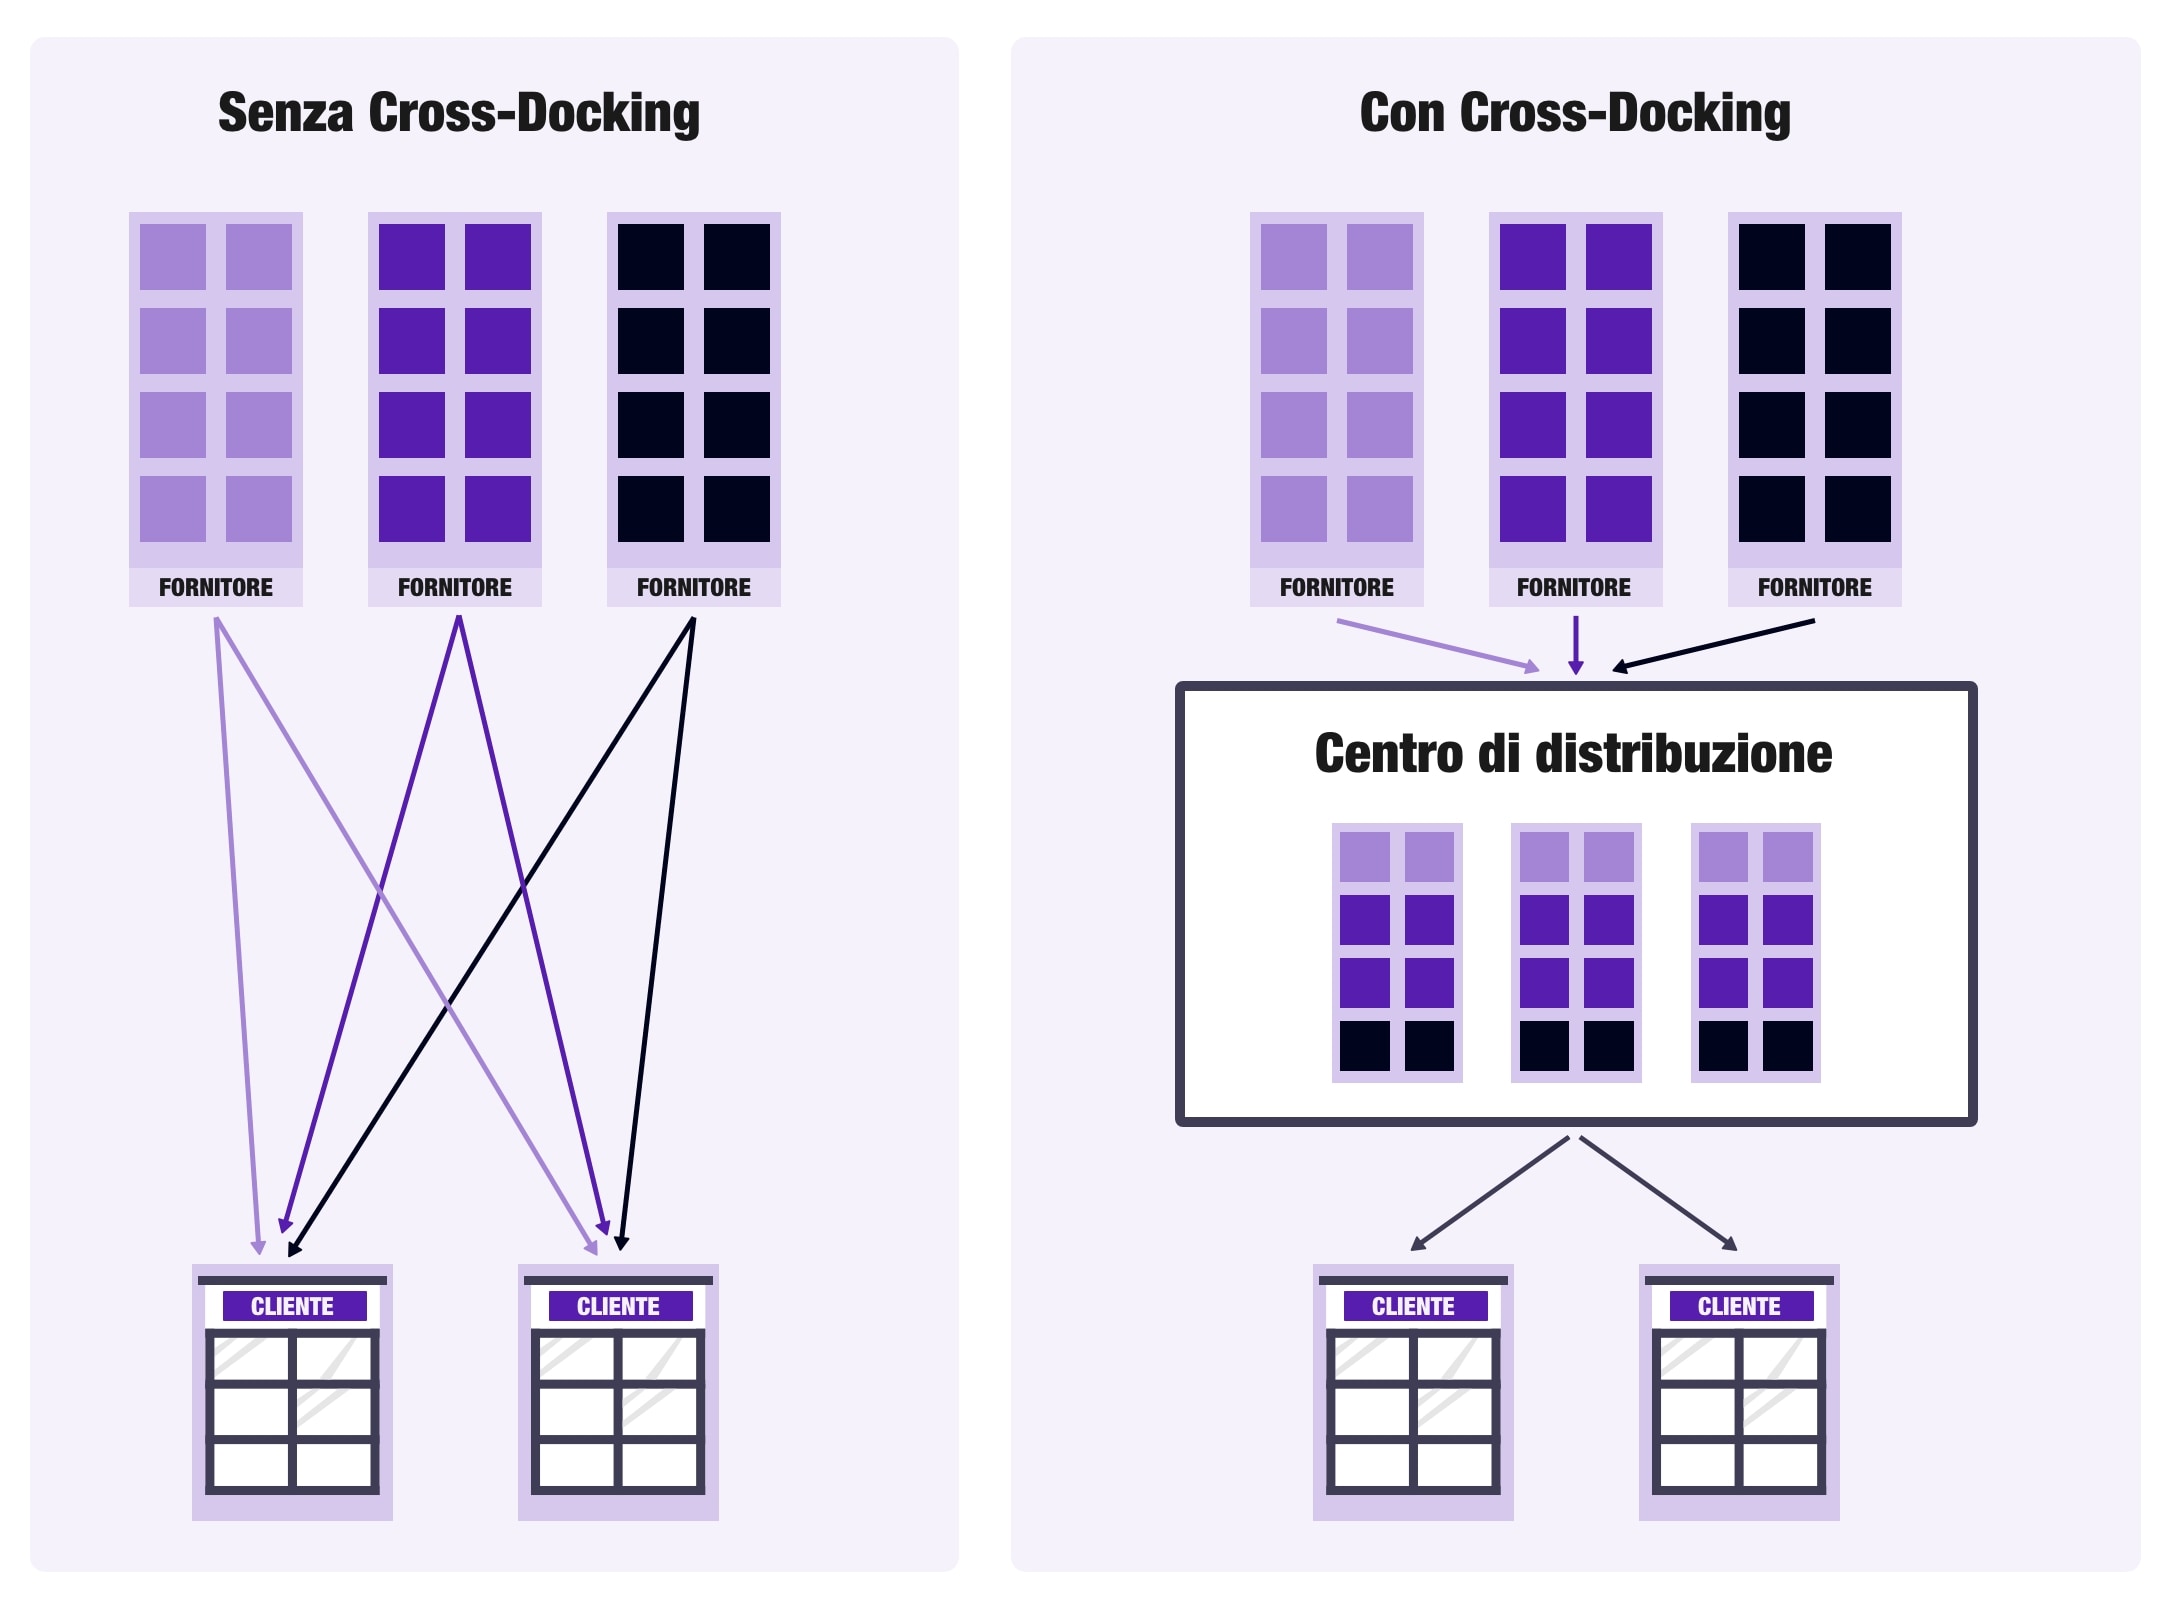 Schema del funzionamento delle piattaforme di cross-docking.